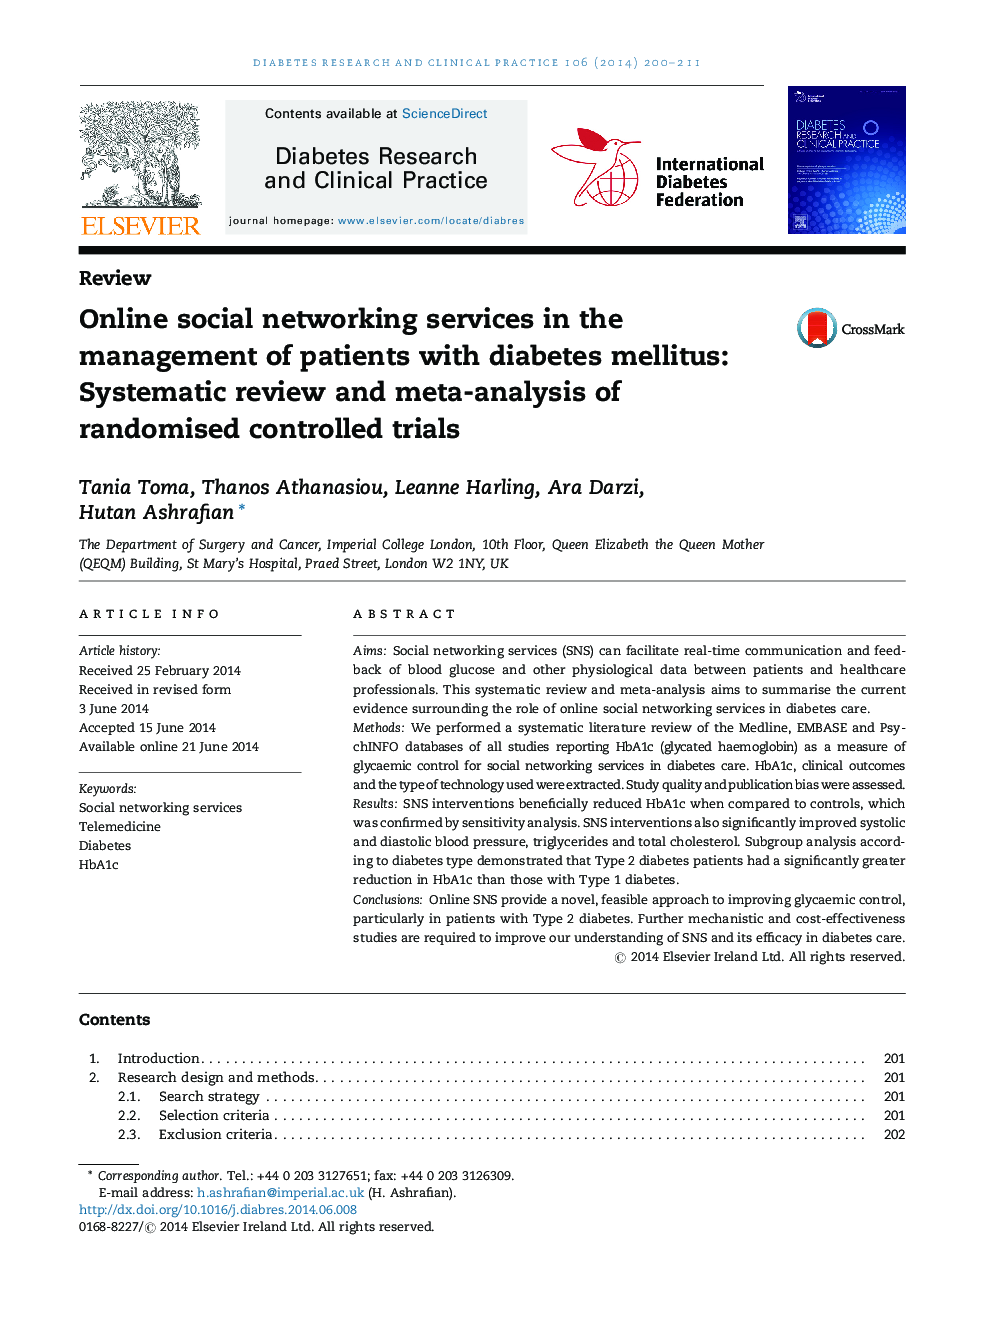 خدمات آنلاین شبکه های اجتماعی در مدیریت بیماران مبتلا به دیابت: بررسی سیستماتیک و متا آنالیز آزمایشات تصادفی کنترل شده 